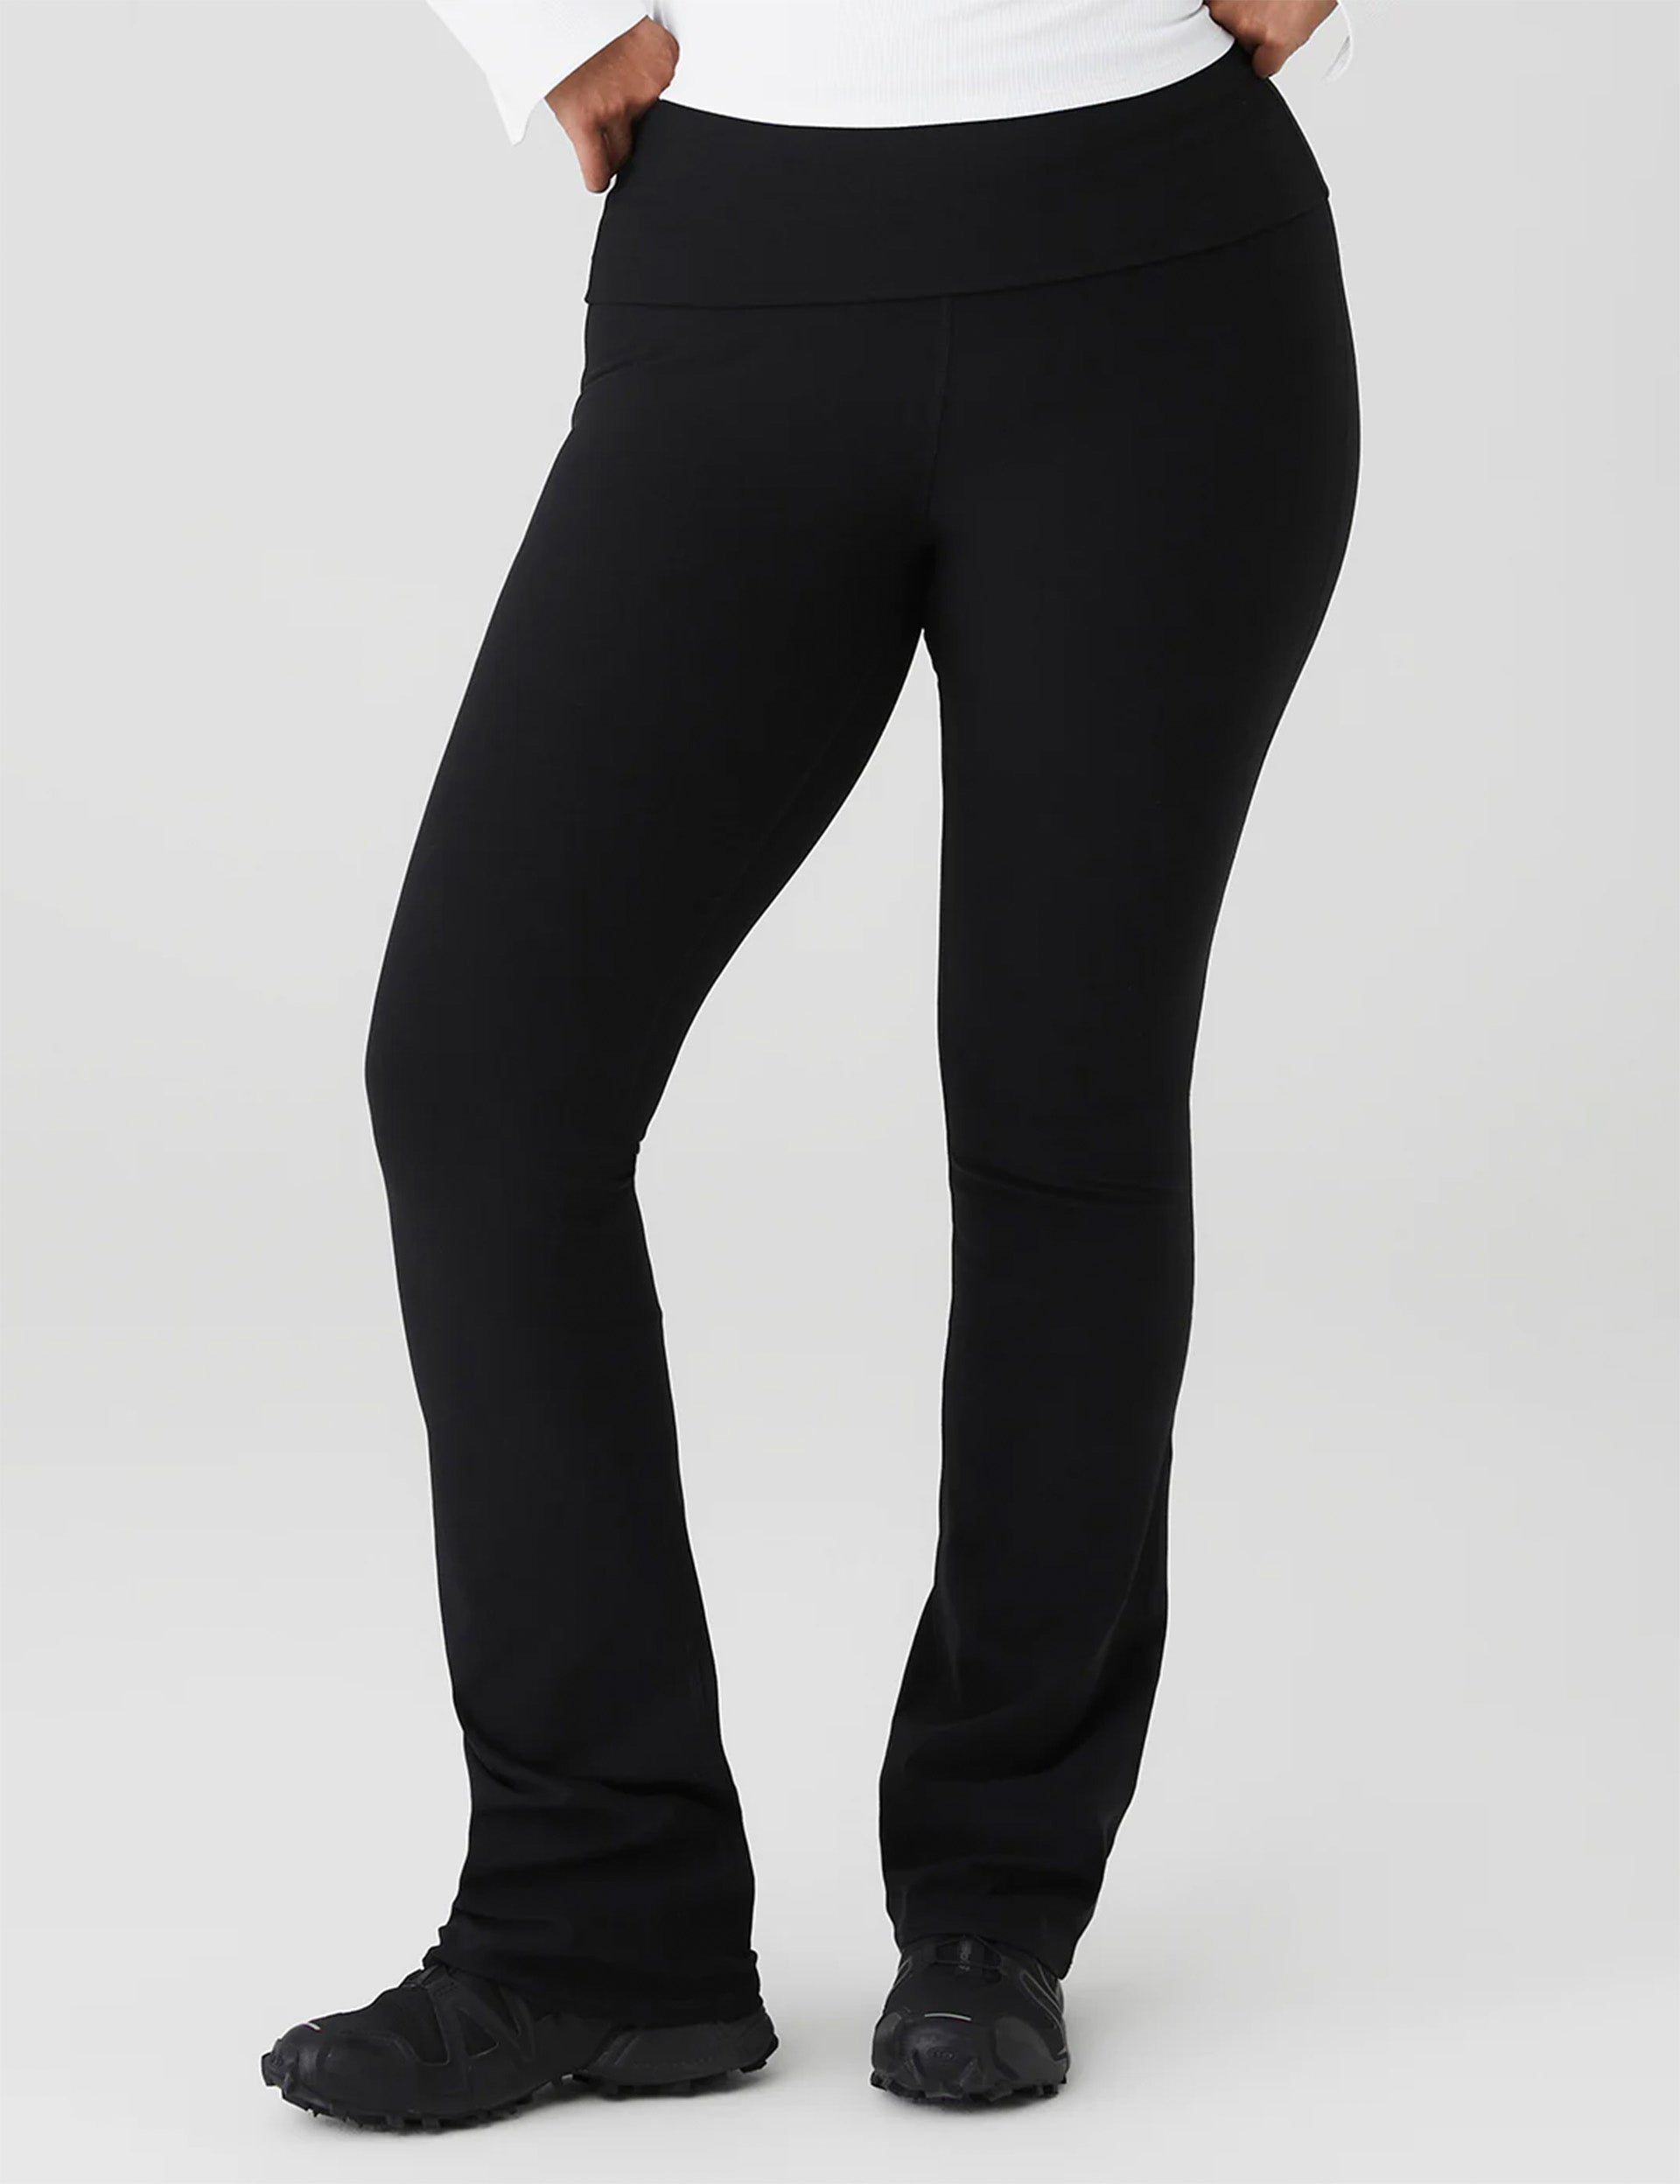 Airbrush Low-Rise Bootcut Legging - Black  Boot cut leggings, Womens black  pants, Black leggings